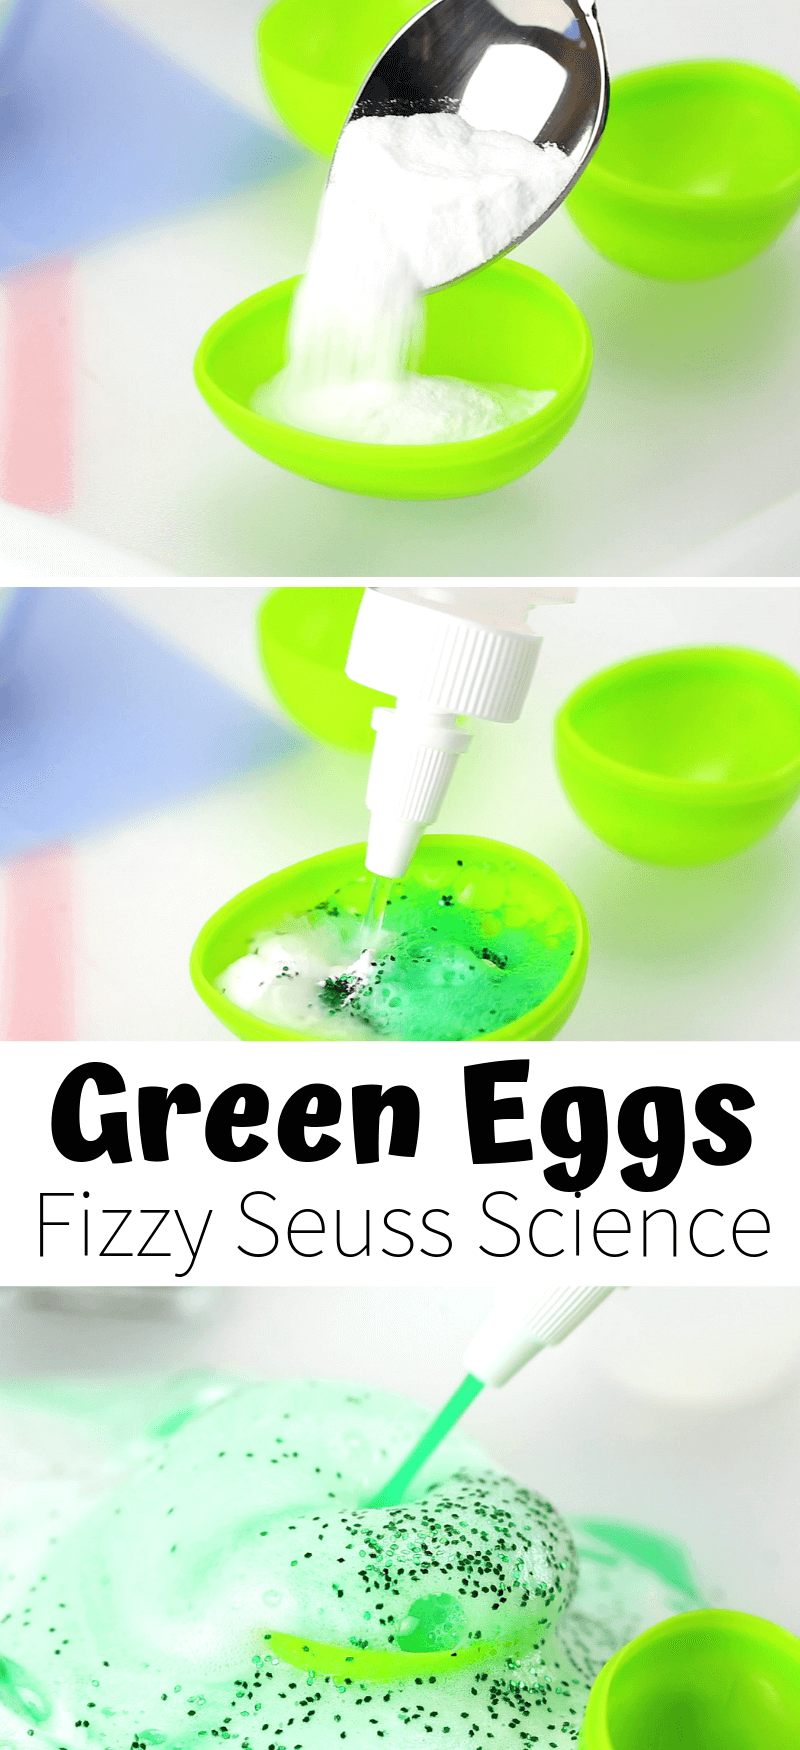 Fizzy Green Eggs baking Soda Dr. Seuss Science